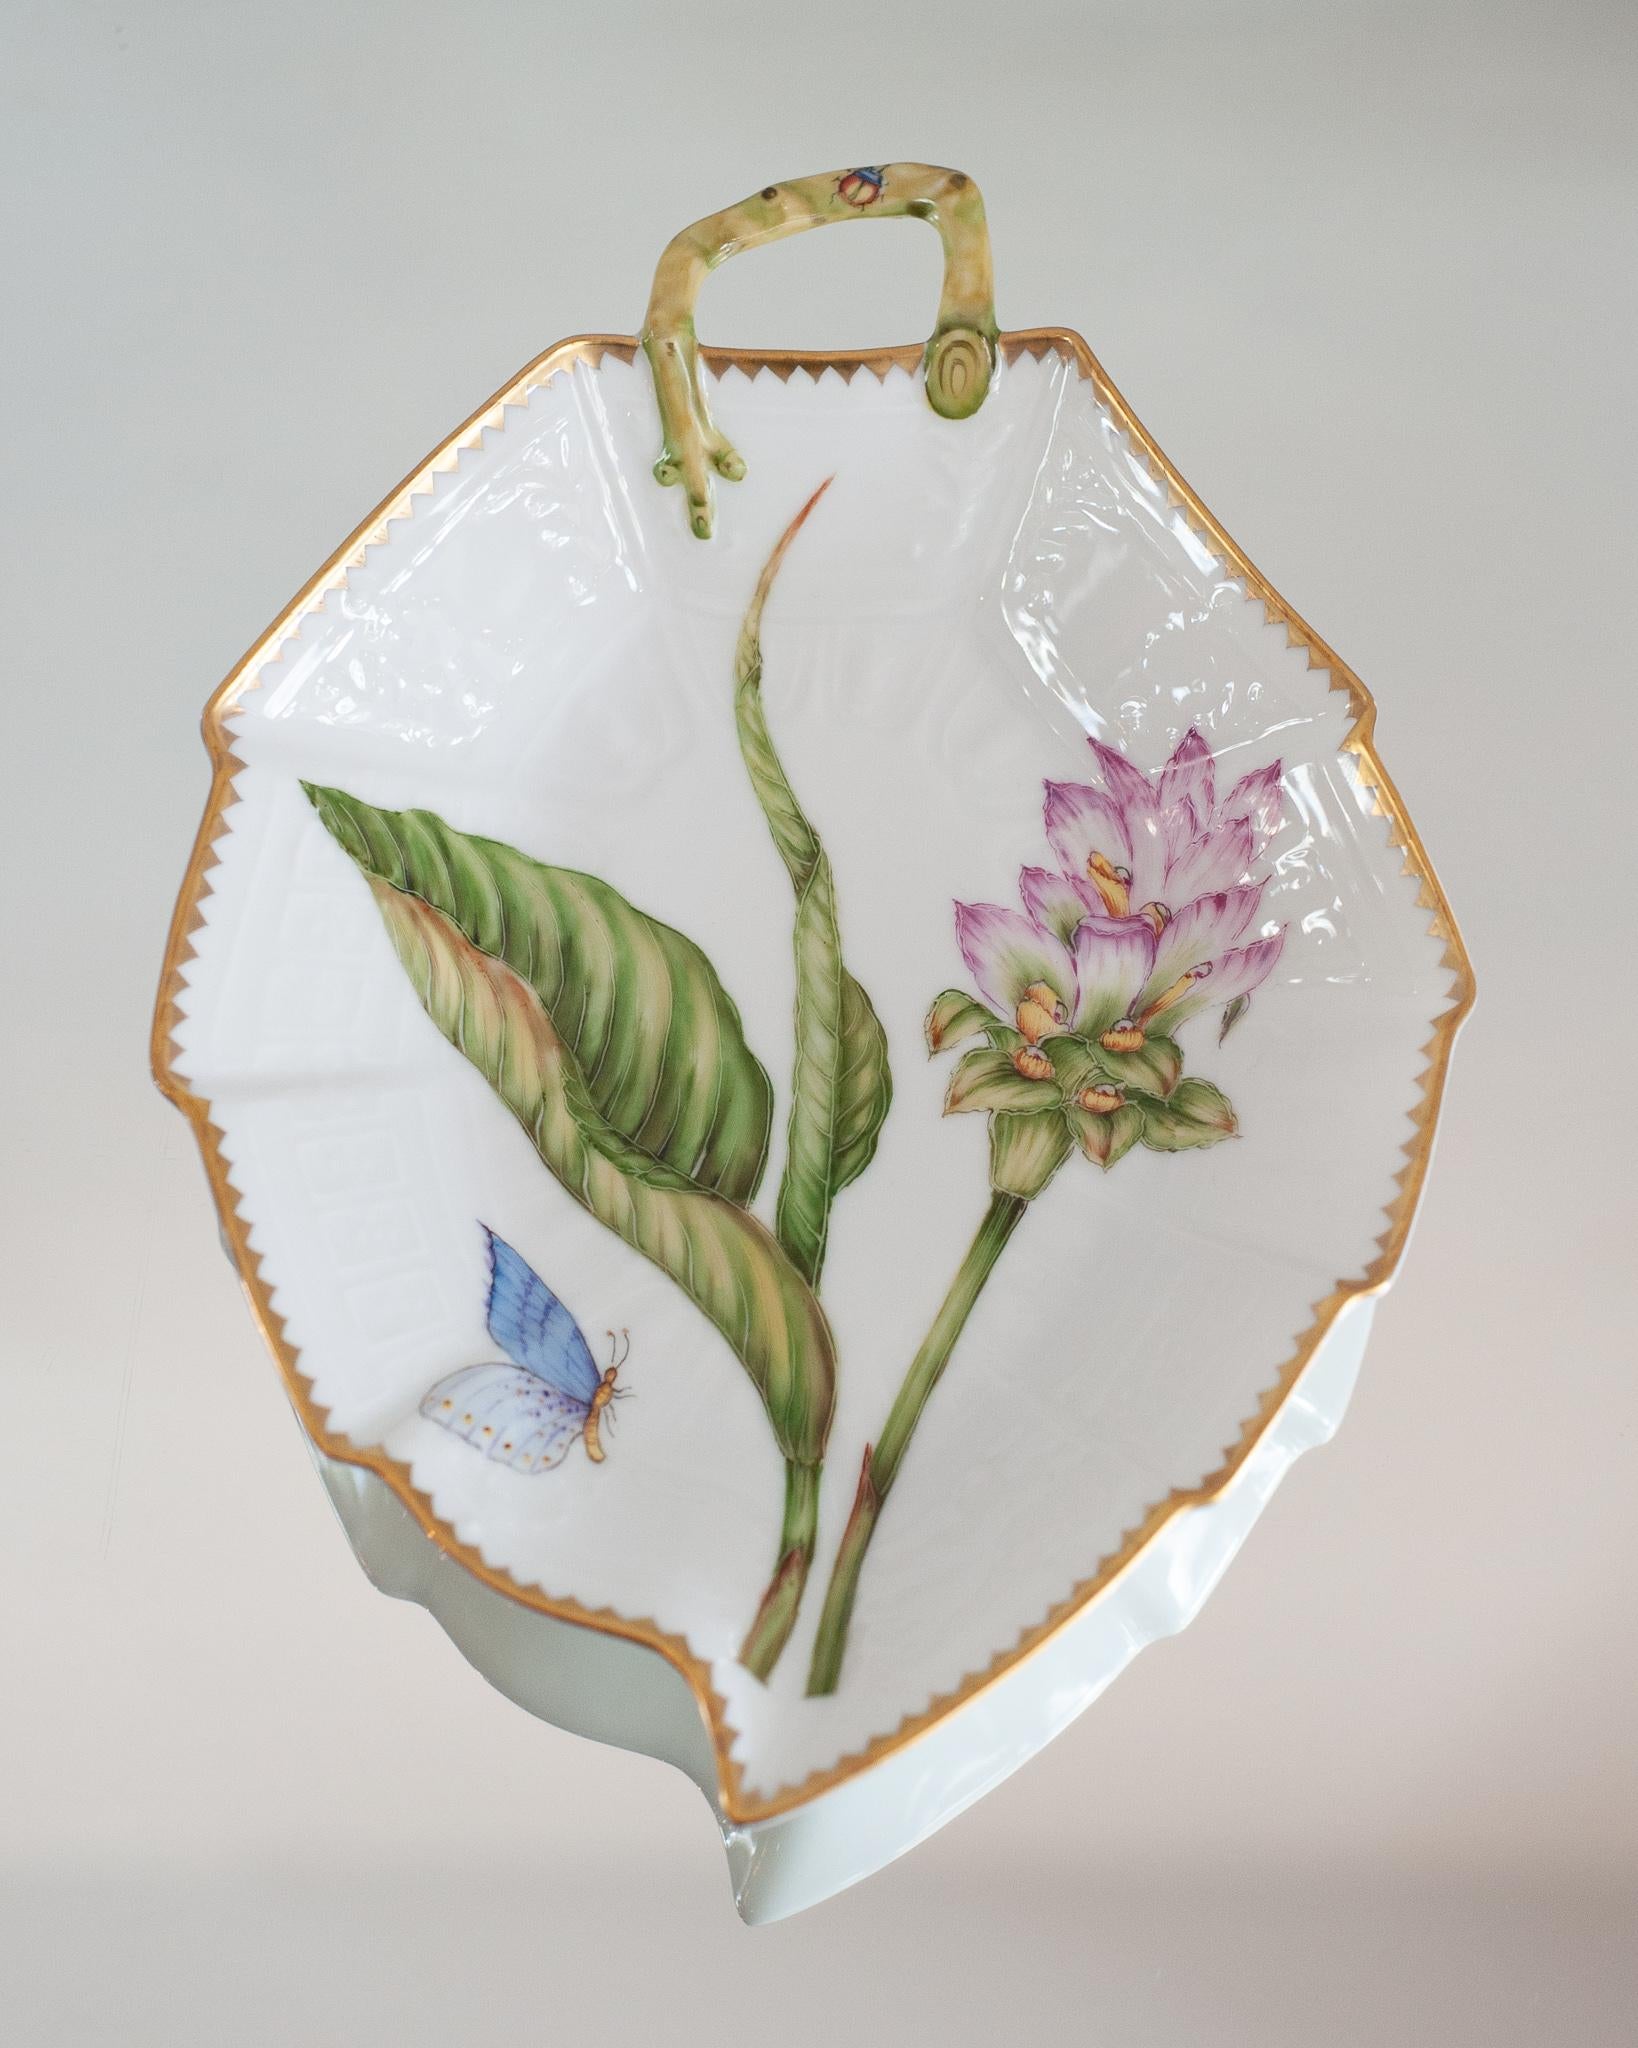 Un magnifique plateau de service en forme de feuille peint à la main avec poignée, par Anna Weatherley Designs. Anna Weatherley conçoit et produit de la porcelaine botanique fine peinte à la main en Hongrie depuis 30 ans.